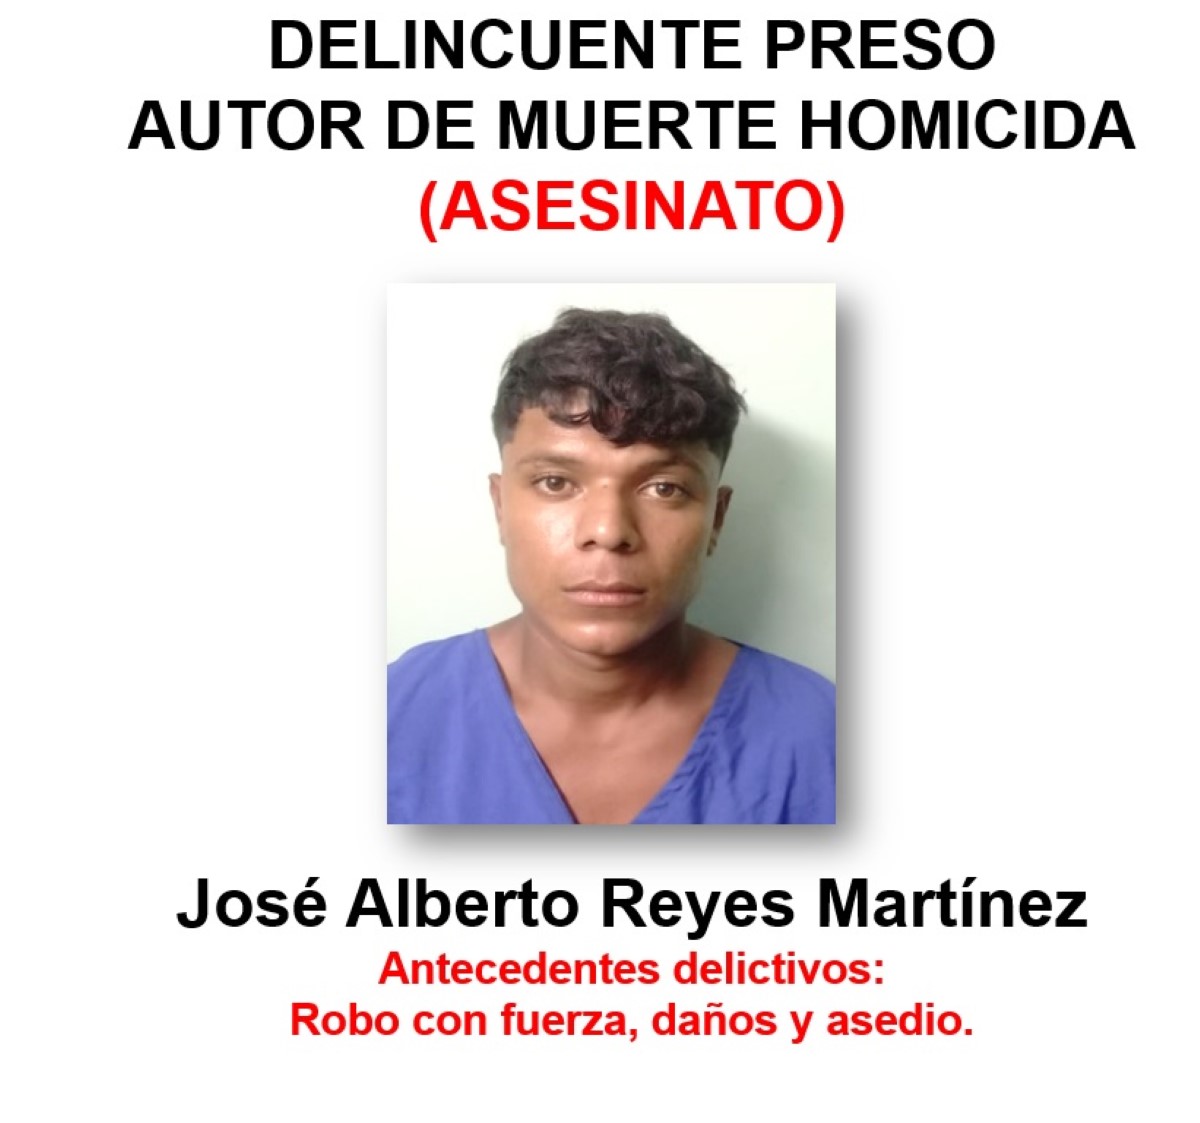 El delincuente José Alberto Reyes Martínez